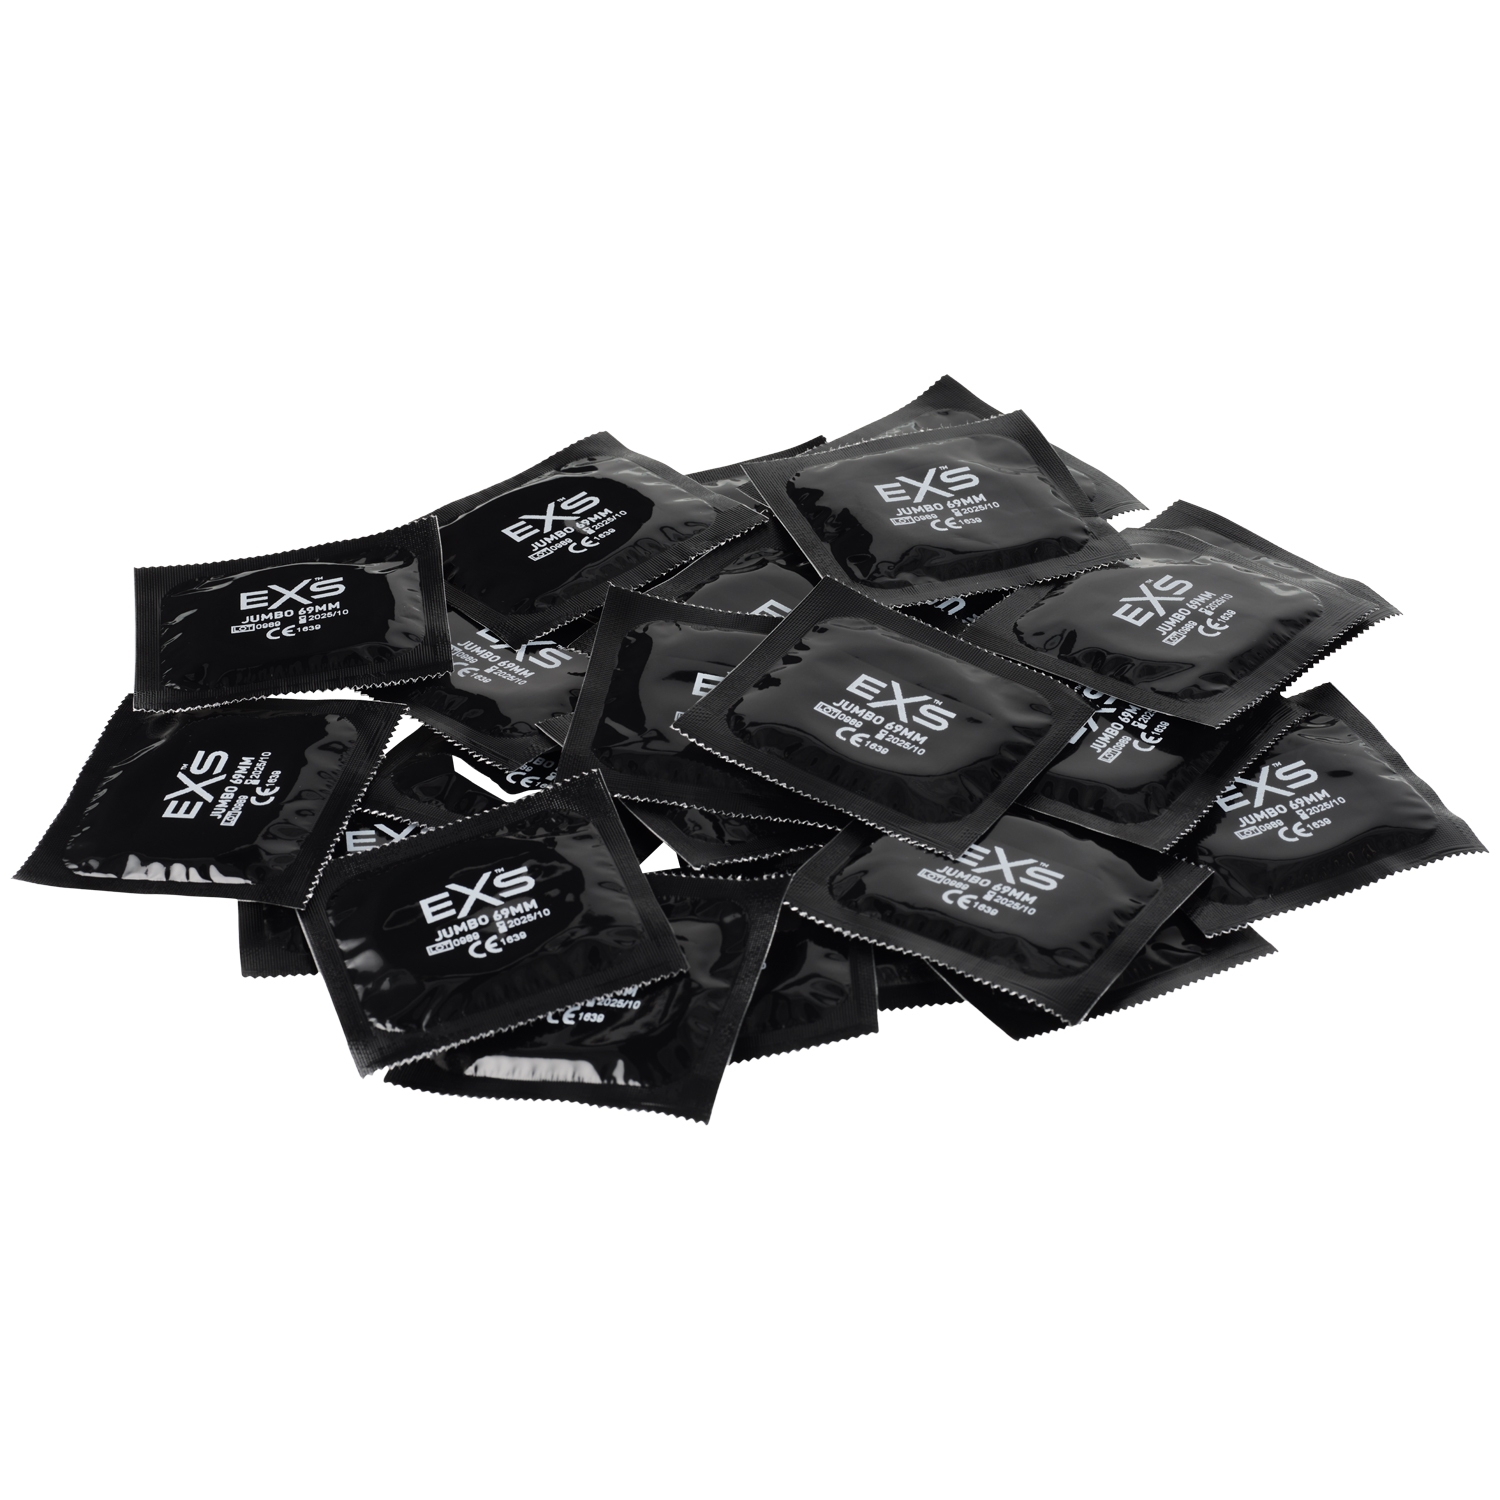 EXS Jumbo Extra Large kondomer 24 st - Klar | Tillbehör//Kondomer//Män//REA för Män//REA//Bättre Sex//Par kondomer//Stora Kondomer//Vanliga Kondomer//Tunna Kondomer//EXS//3 för 249:- | Intimast